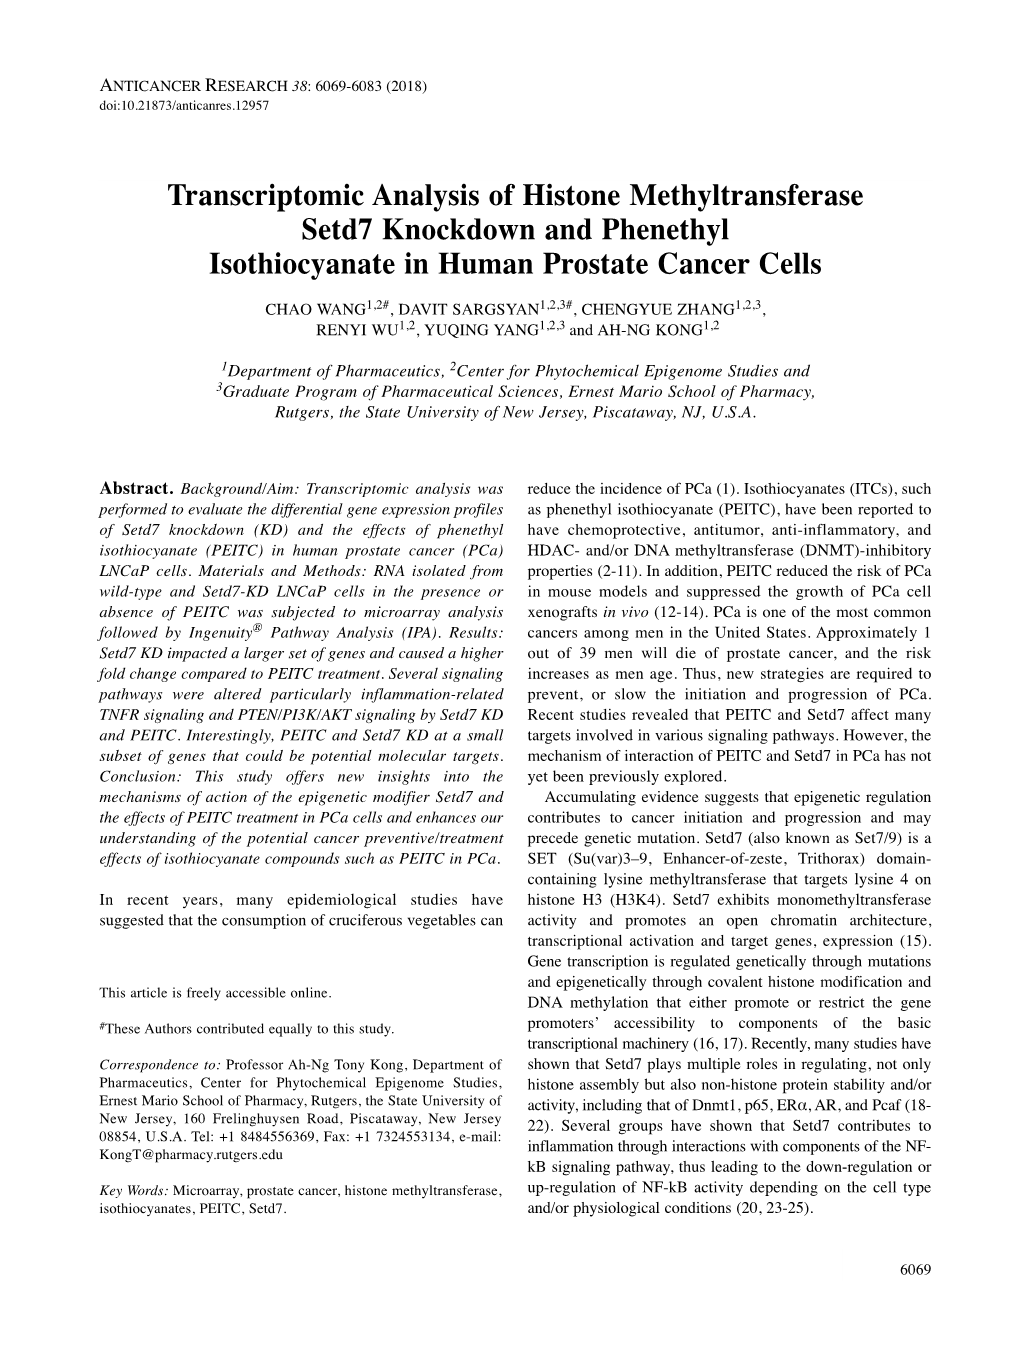 Transcriptomic Analysis of Histone Methyltransferase Setd7